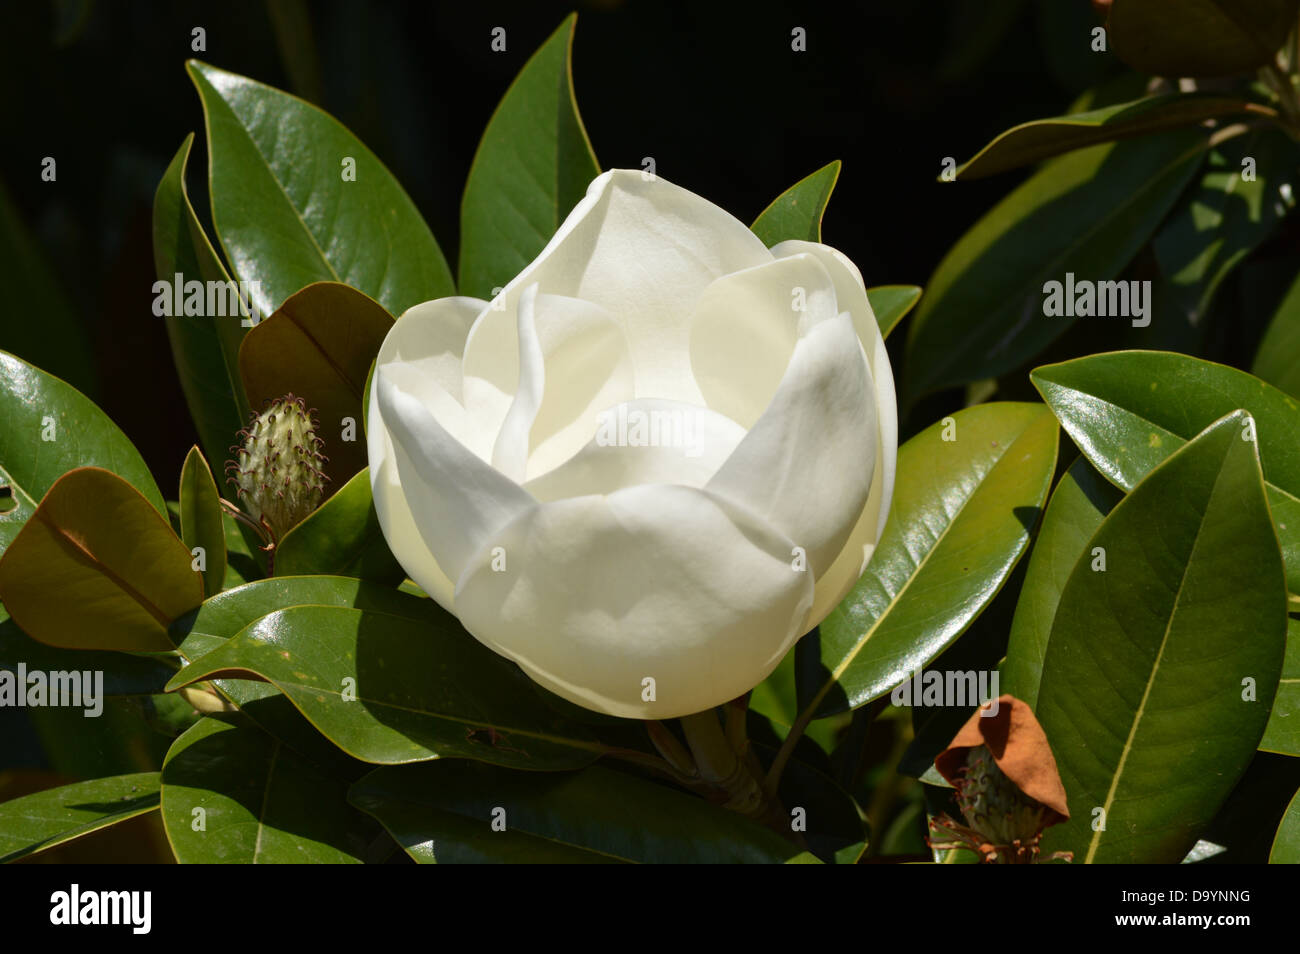 Magnolia, Flower, White Flower, Bull Bay, Nature, Natural Stock Photo